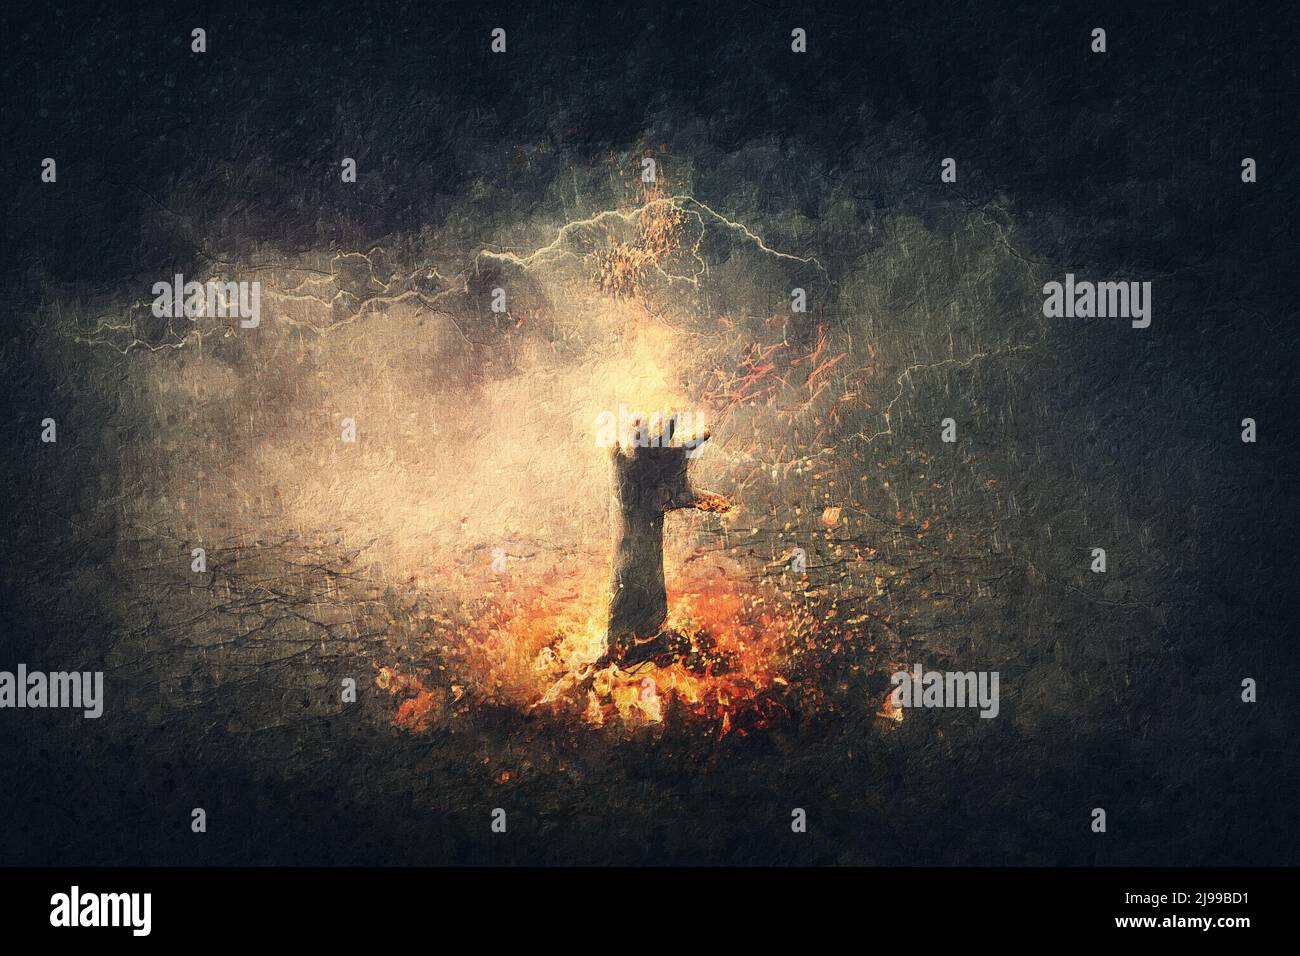 Fantastique tableau d'horreur d'une main sur le feu qui s'élève du sol. Scène surréaliste avec le bras de démon flamboyant sort de l'enfer. Halloween – arrière-groupe effrayant Banque D'Images